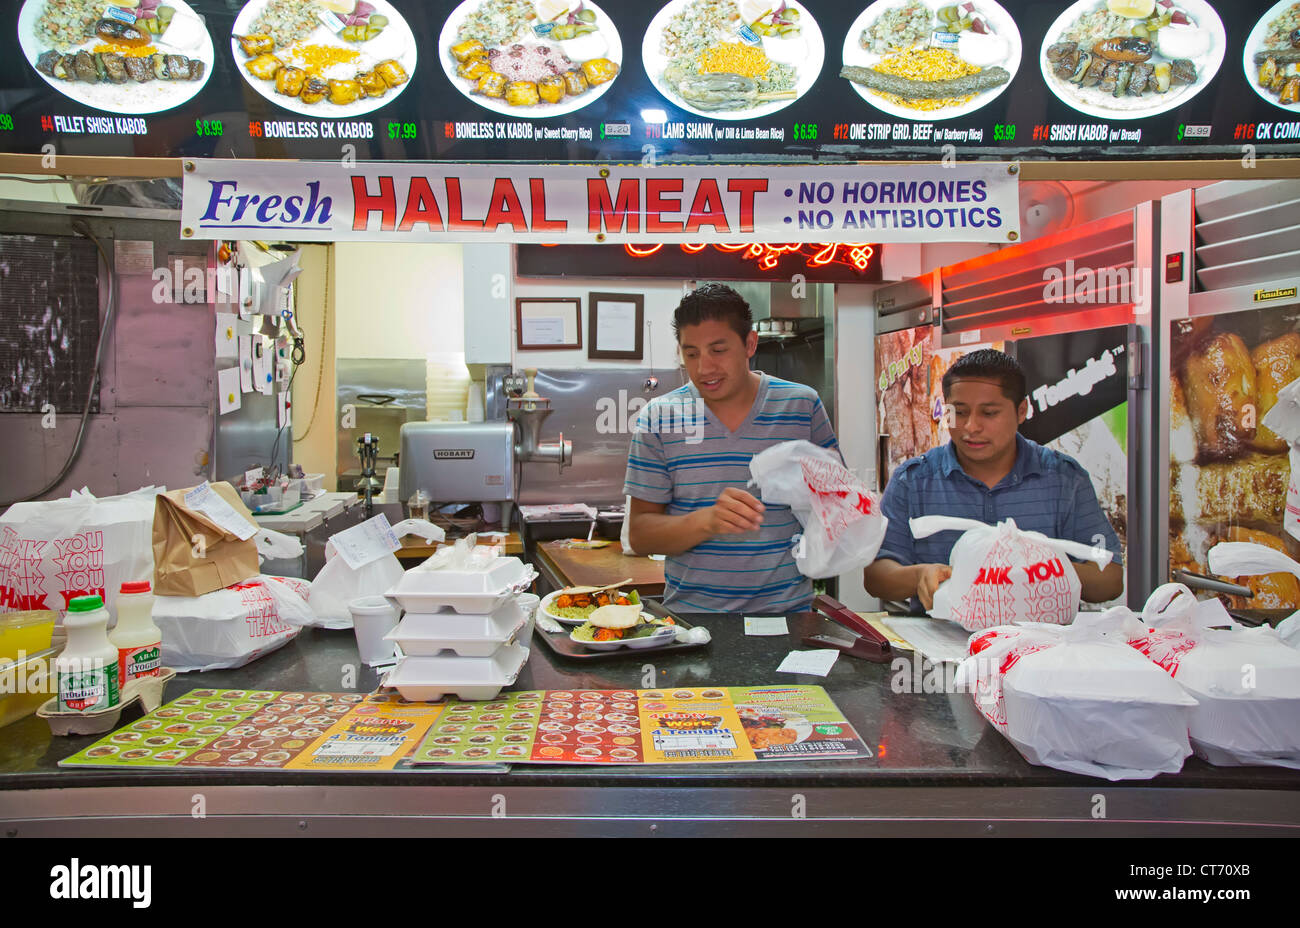 Los Angeles, California - i lavoratori preparare take-out pasti presso un cibo stand che vende carne halal in Los Angeles' fashion district. Foto Stock